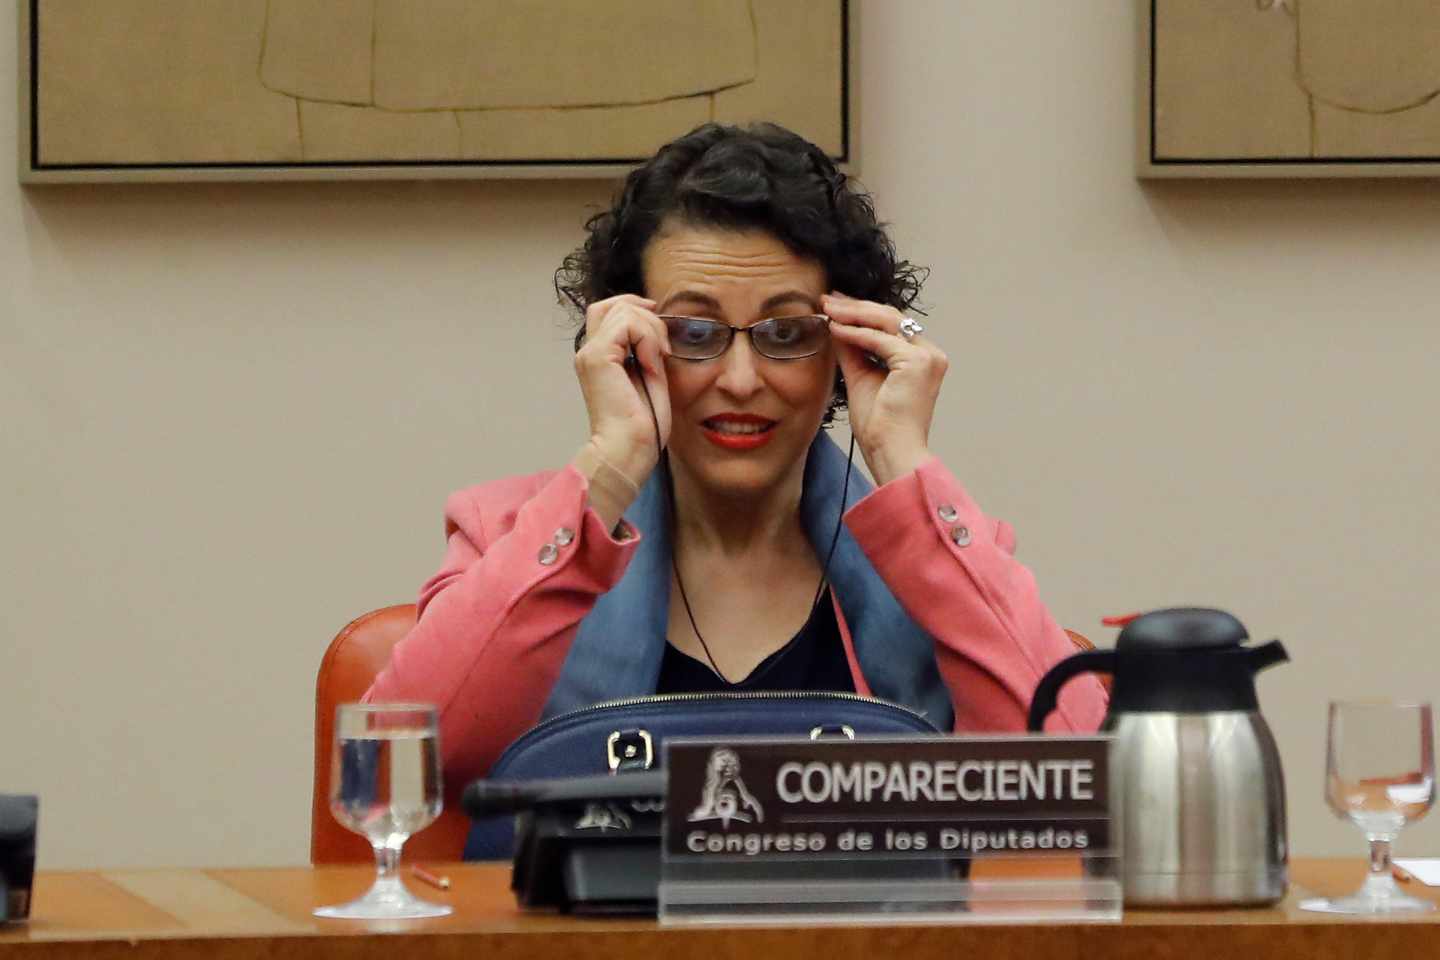 La ministra de Trabajo, Migraciones y Seguridad Social, Magdalena Valerio, comparece esta tarde en la Comisión de Empleo del Congreso para exponer las líneas políticas de actuación de su departamento